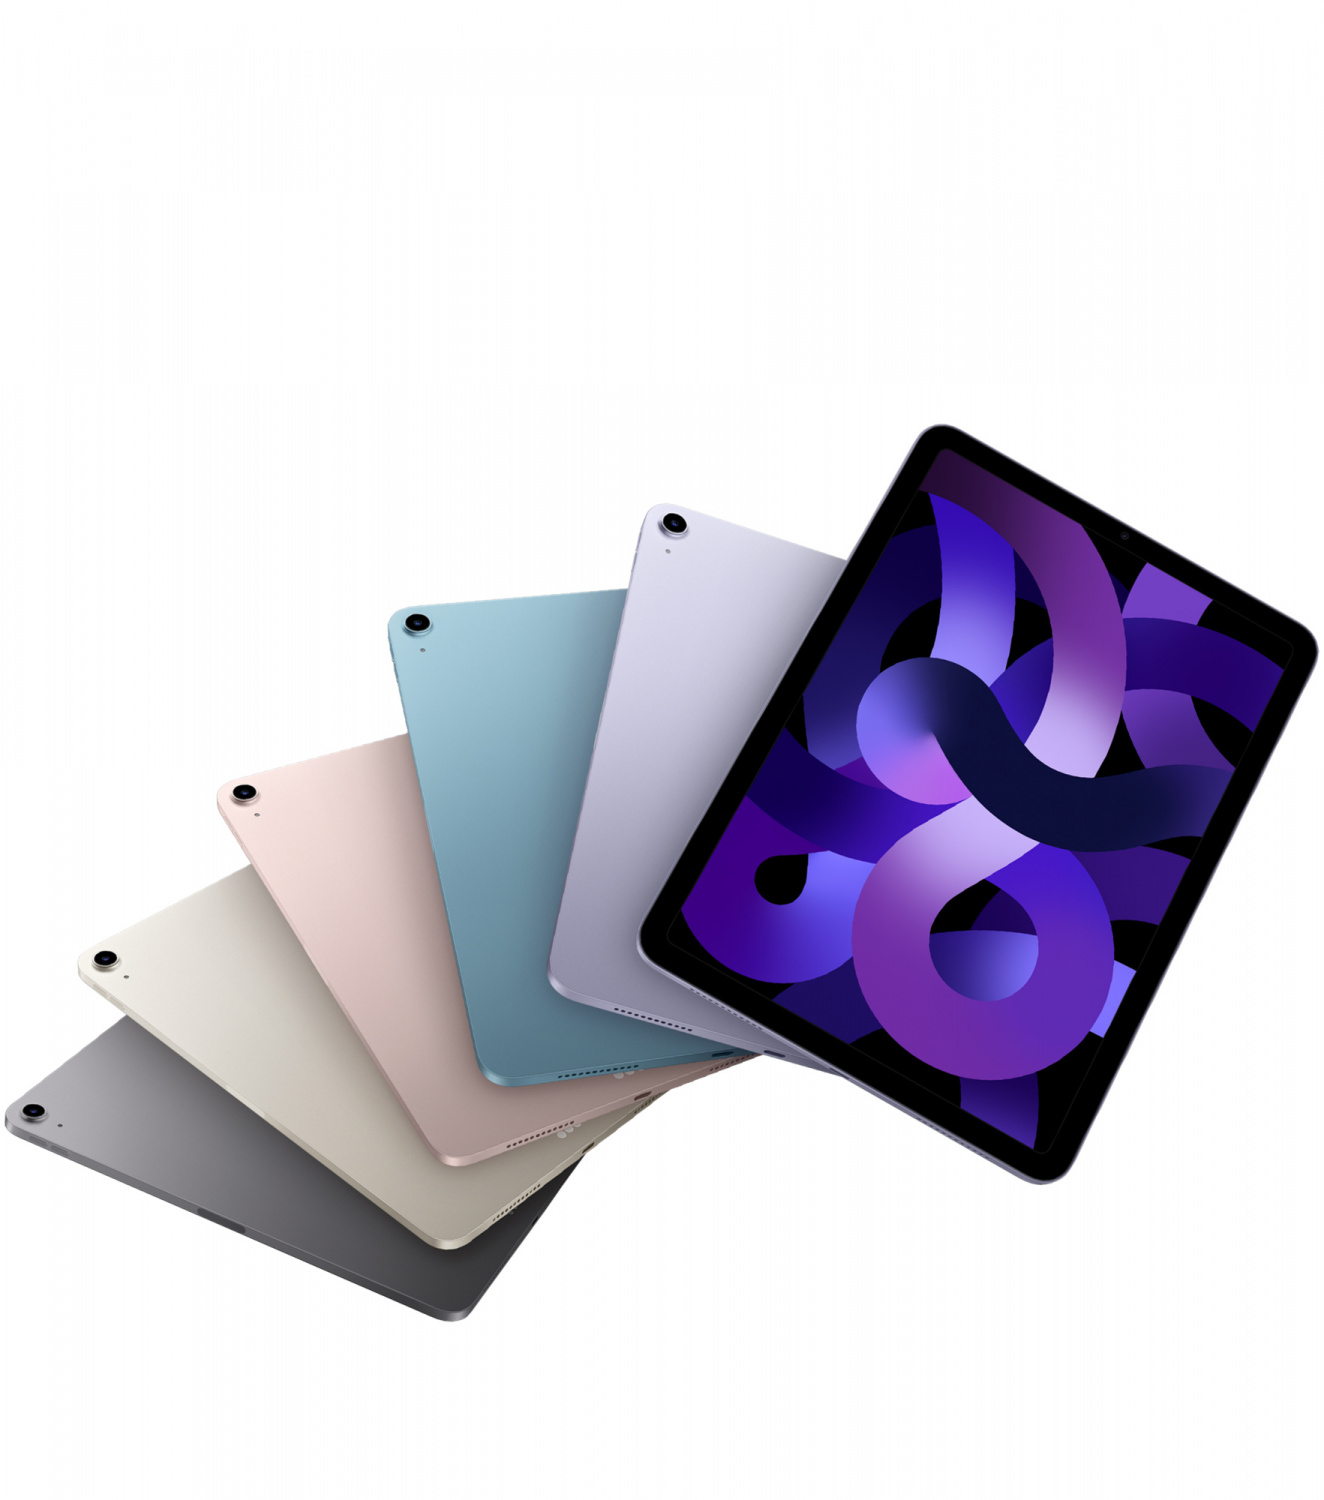 Купить планшет apple ipad air 5 поколение m1 2022  wi-fi 256 гб, purple Apple iPad Air в официальном магазине Apple, Samsung, Xiaomi. iPixel.ru Купить, заказ, кредит, рассрочка, отзывы,  характеристики, цена,  фотографии, в подарок.